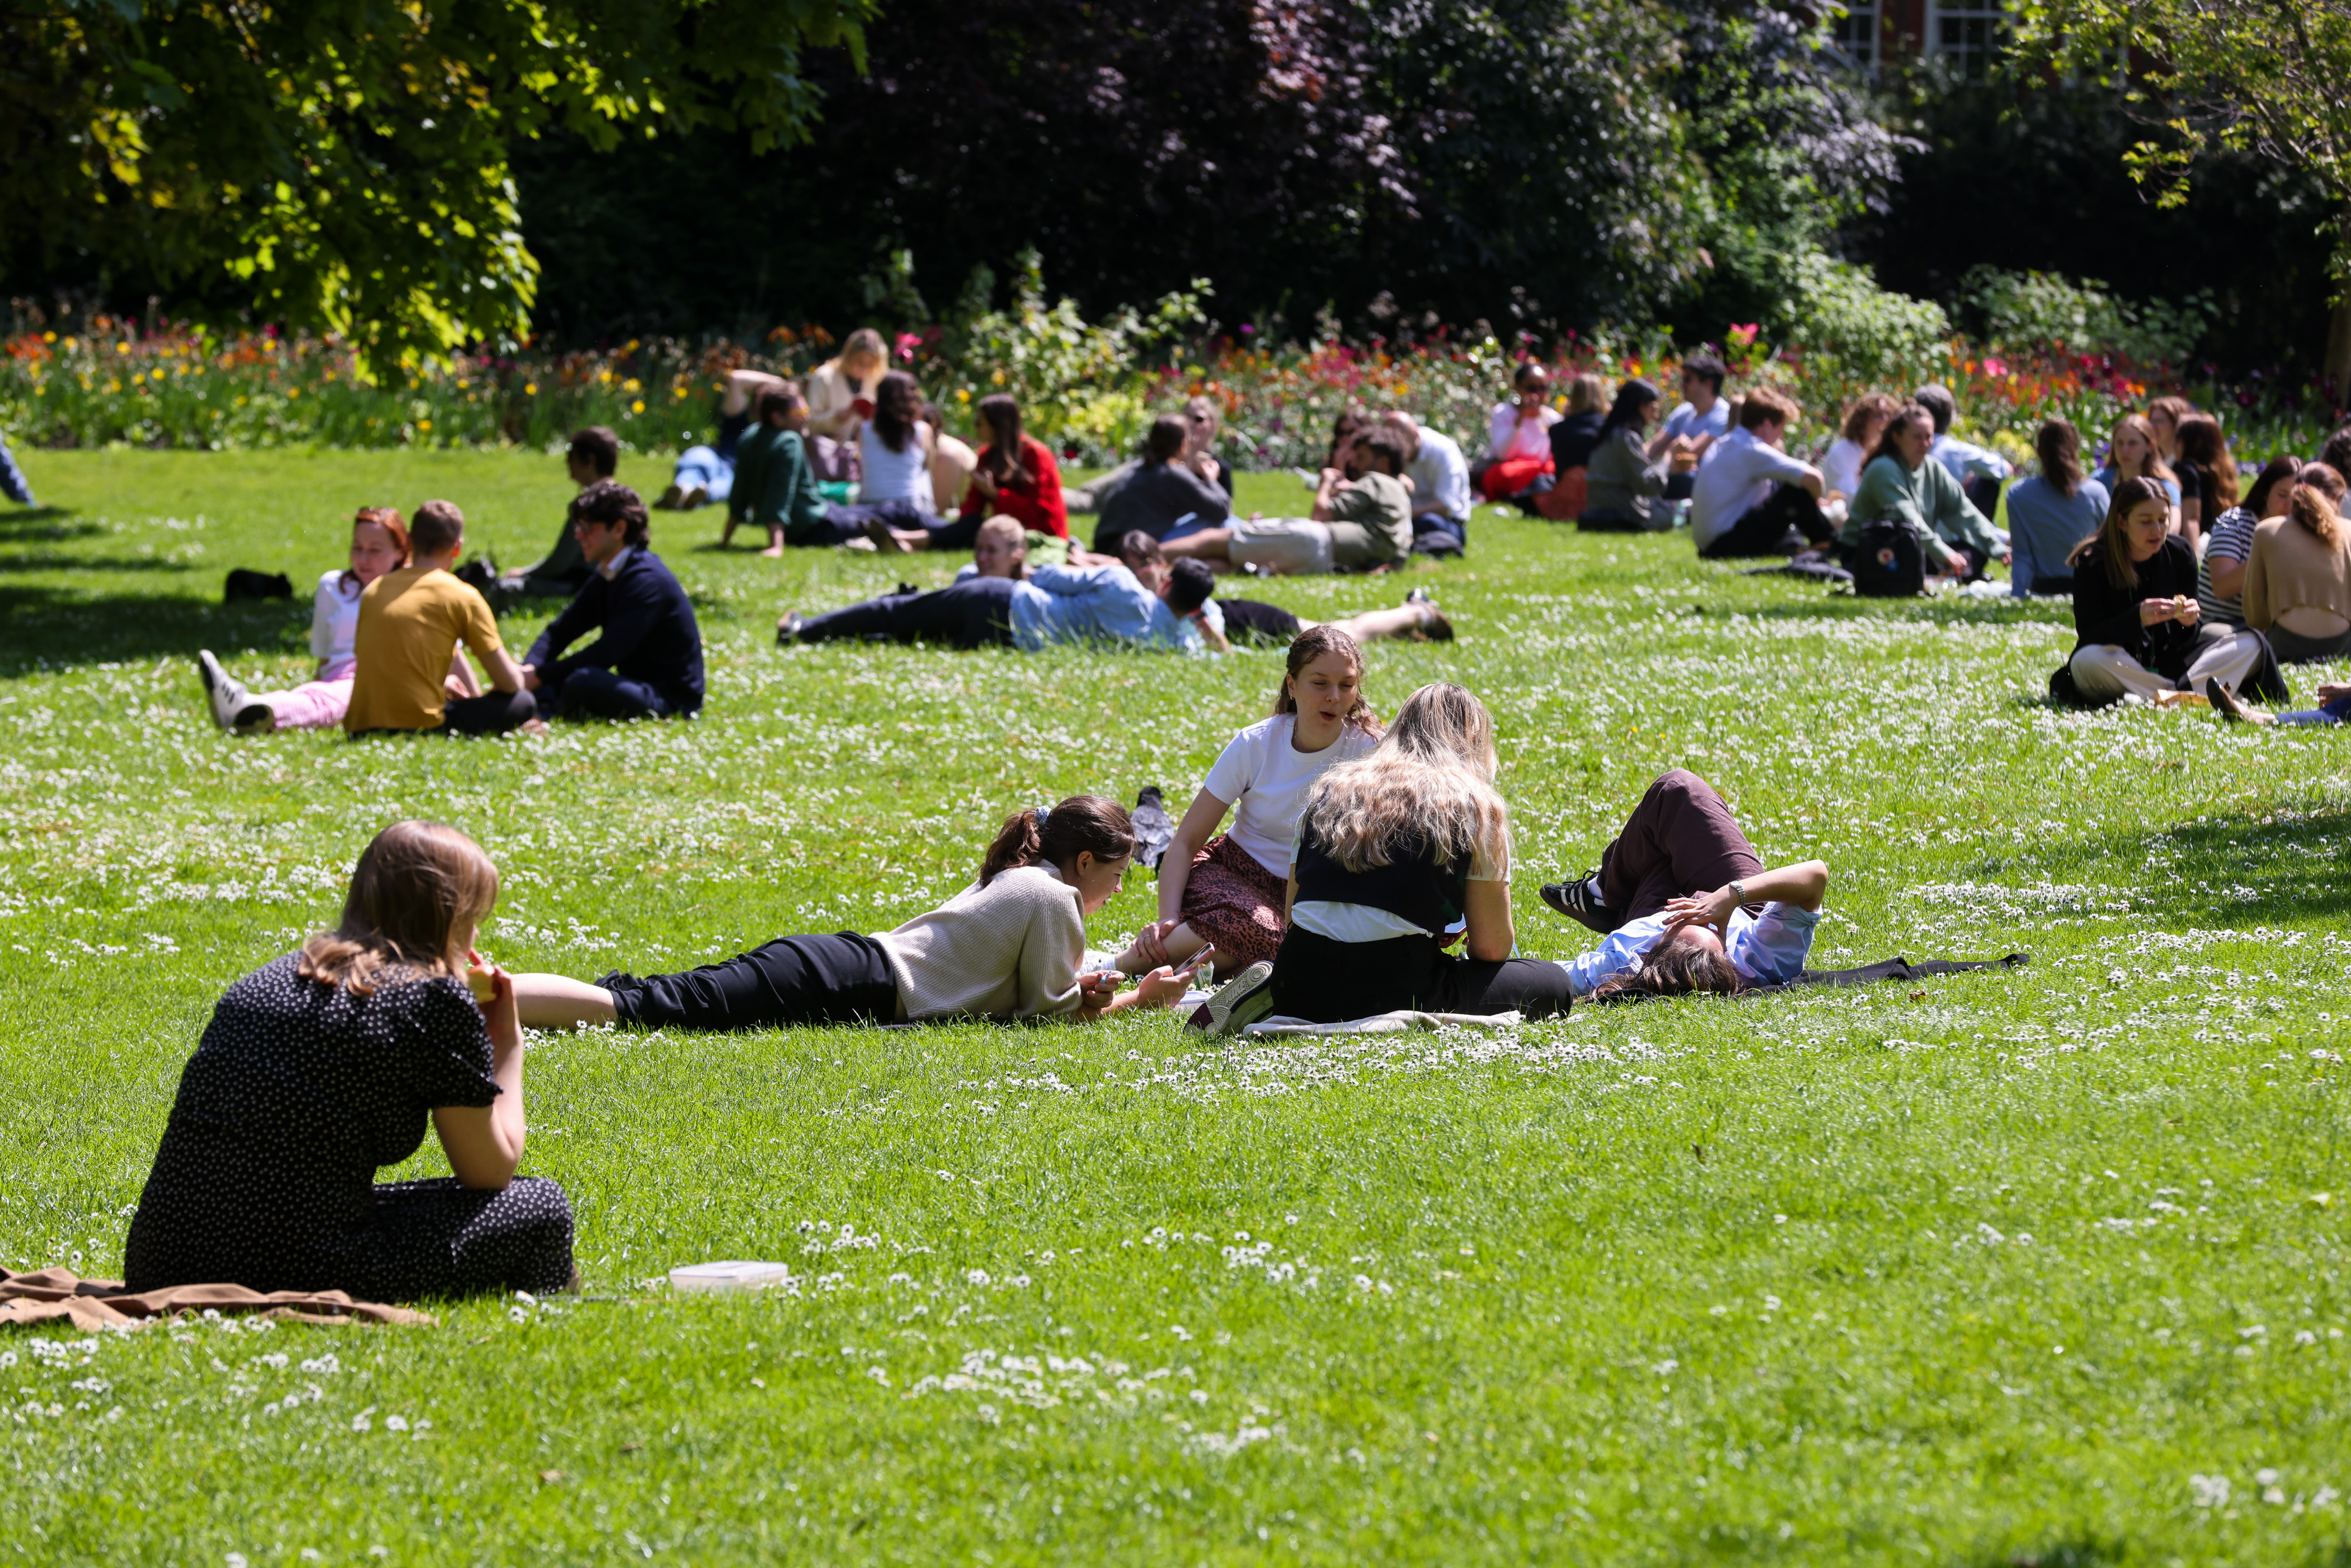 Die Londoner strömten in Scharen in den St. James's Park im Zentrum Londons, um die gestrigen Sonnenstrahlen zu genießen